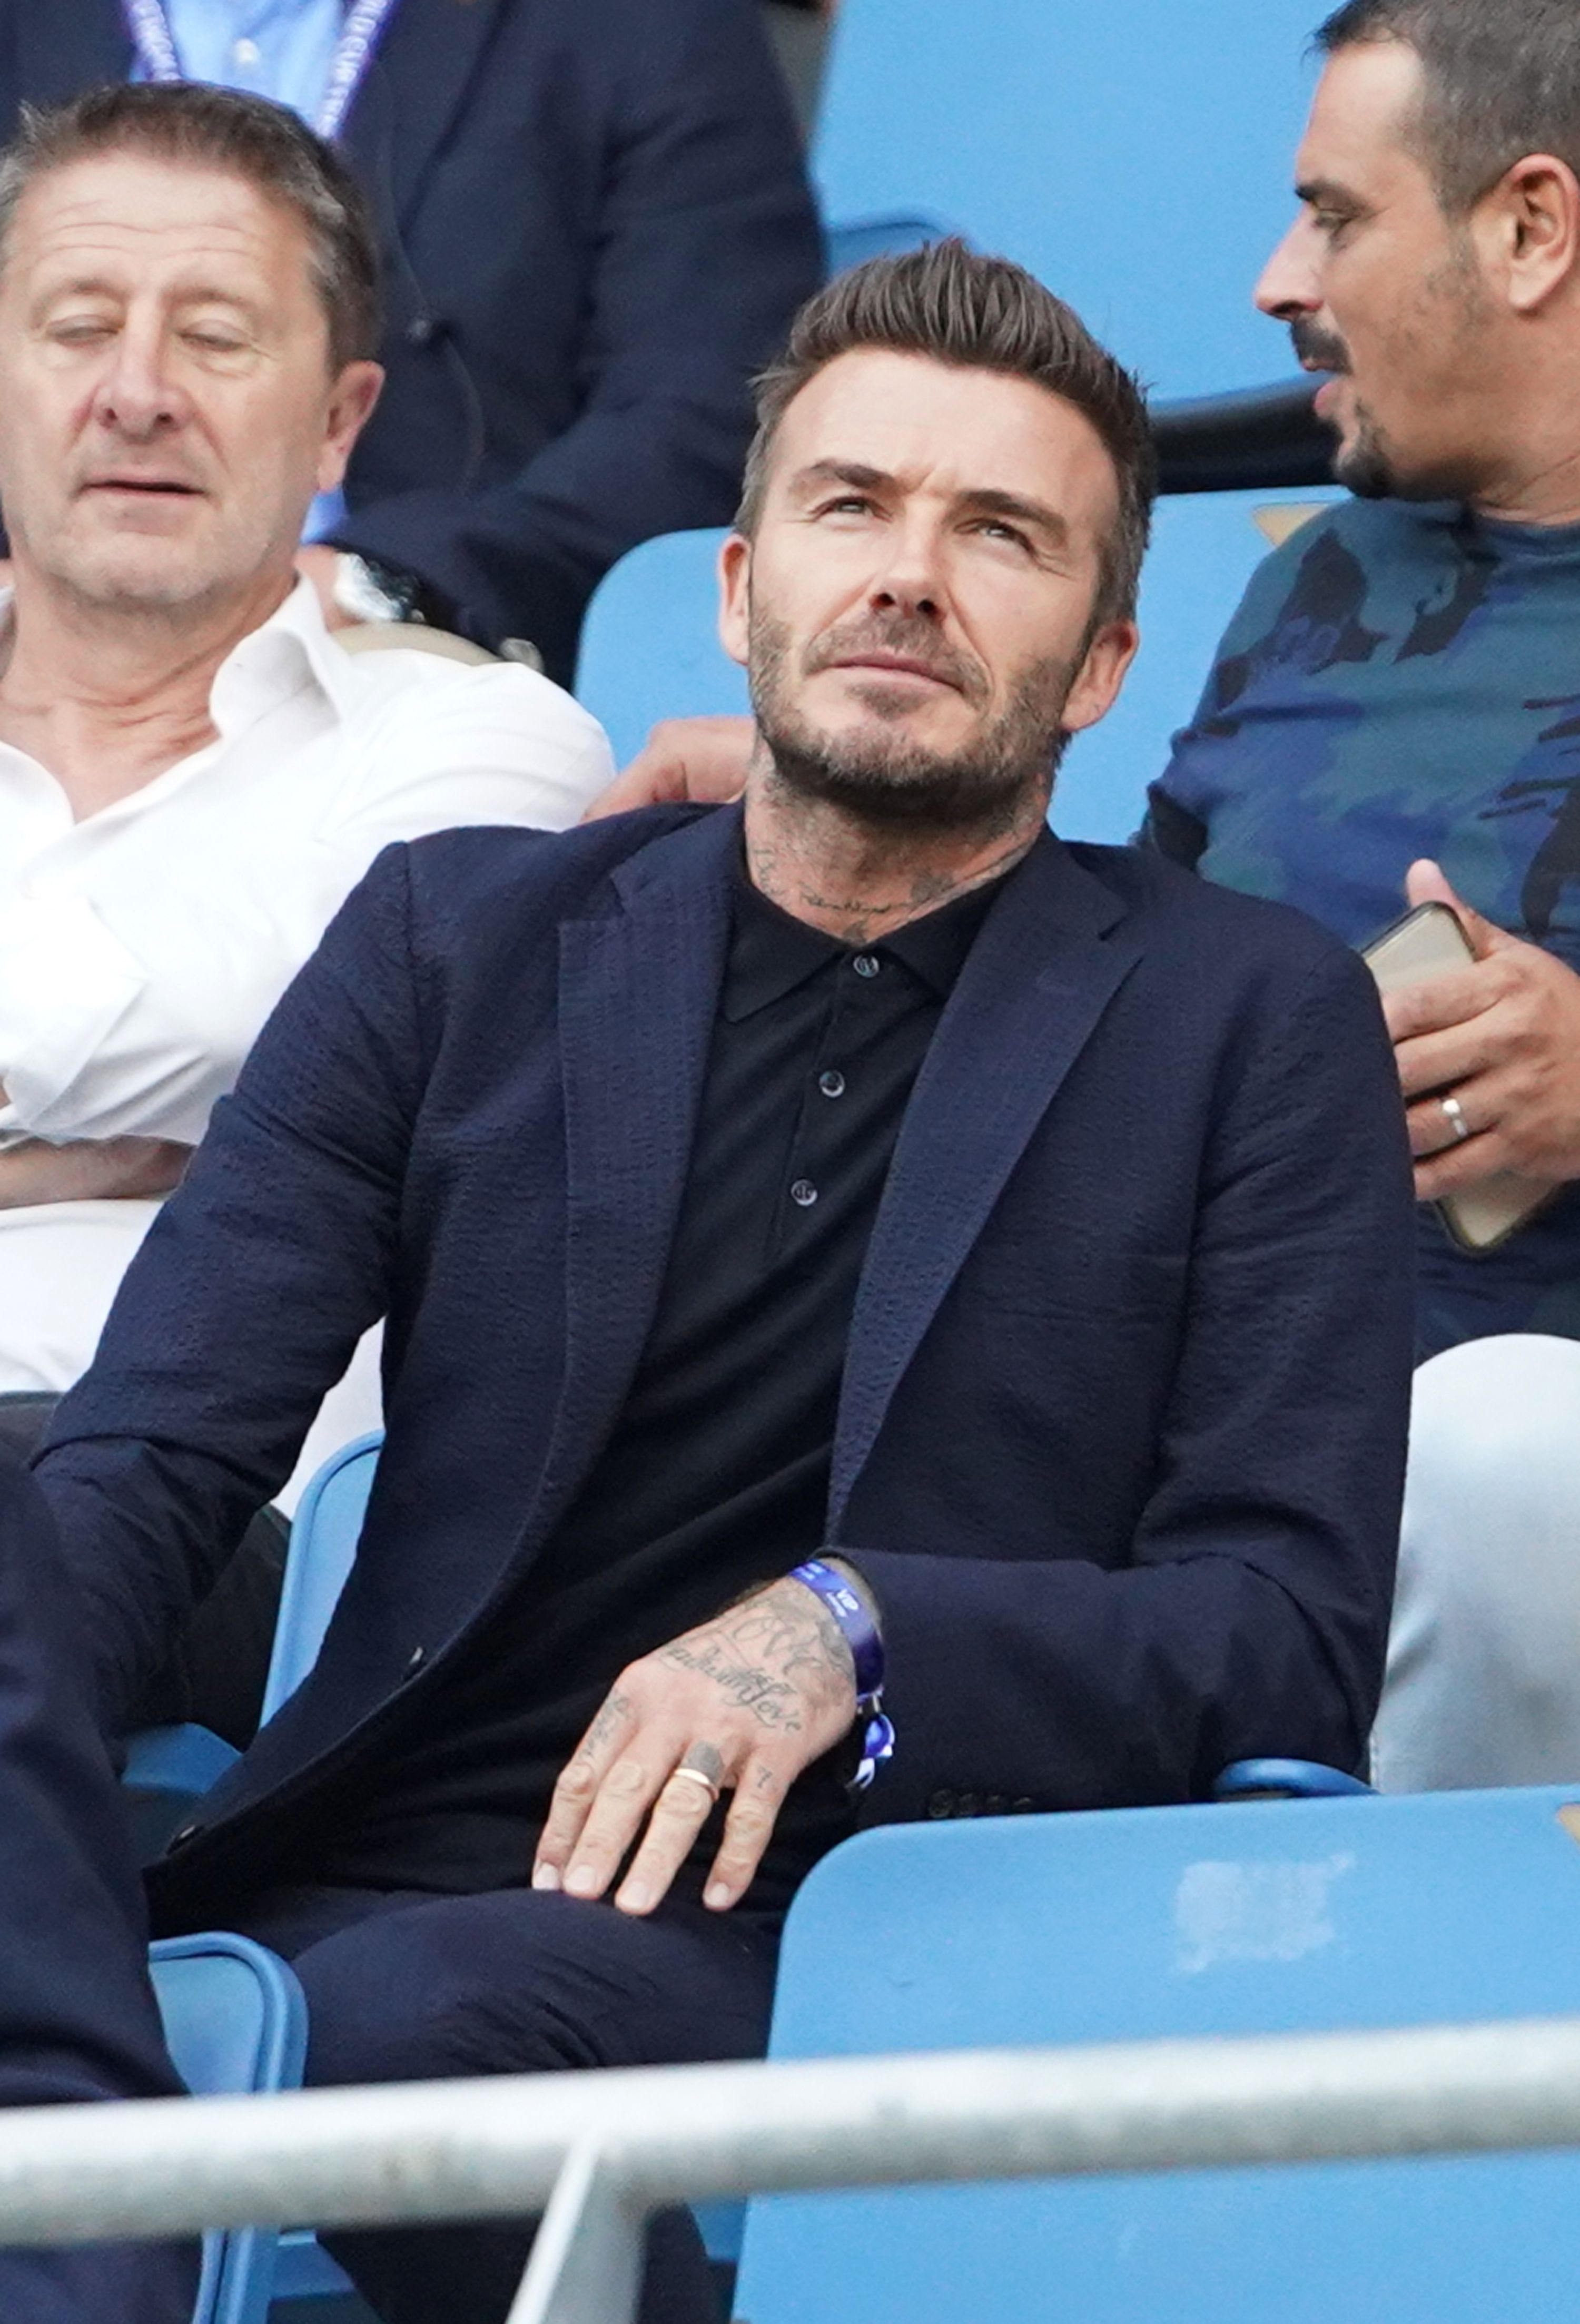 Cómo combinar un traje con un polo - El manual de David Beckham